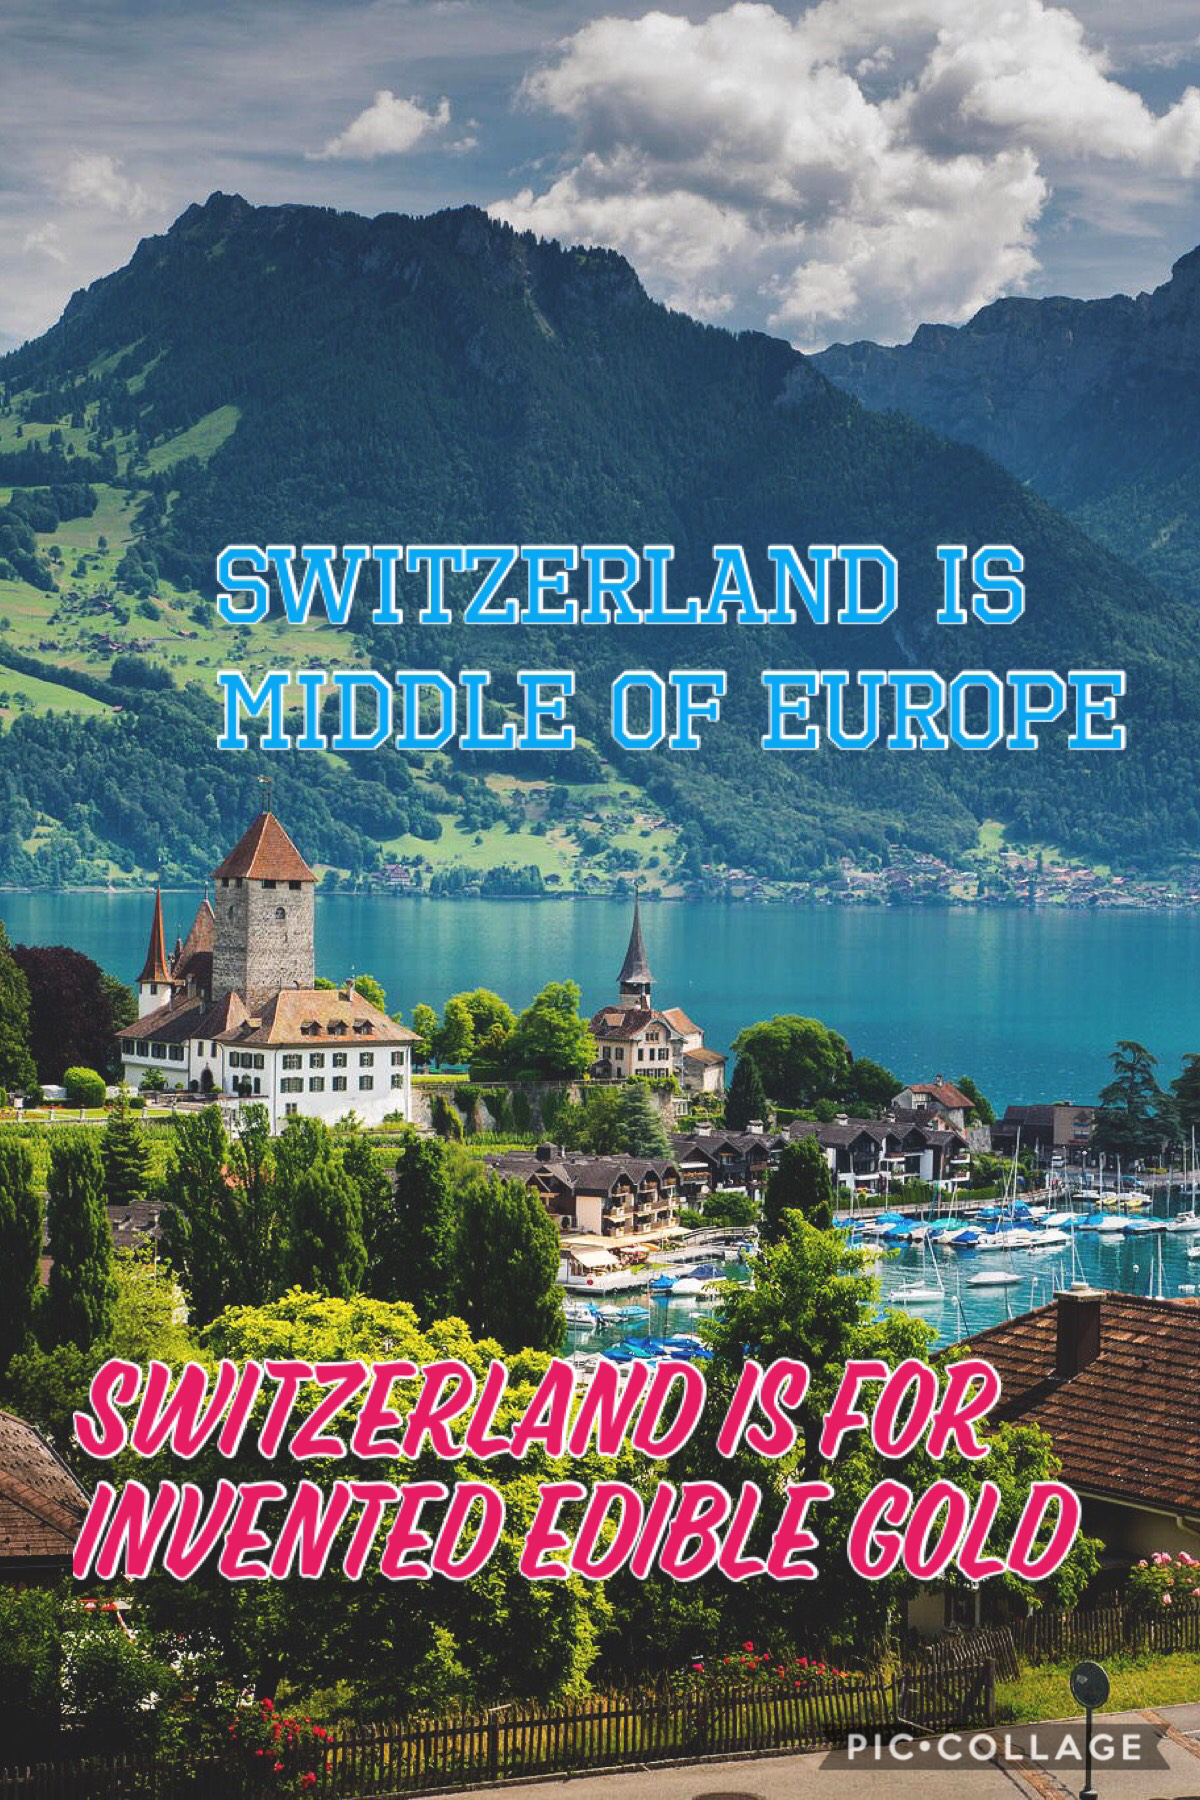 Travel destination 4 Switzerland 